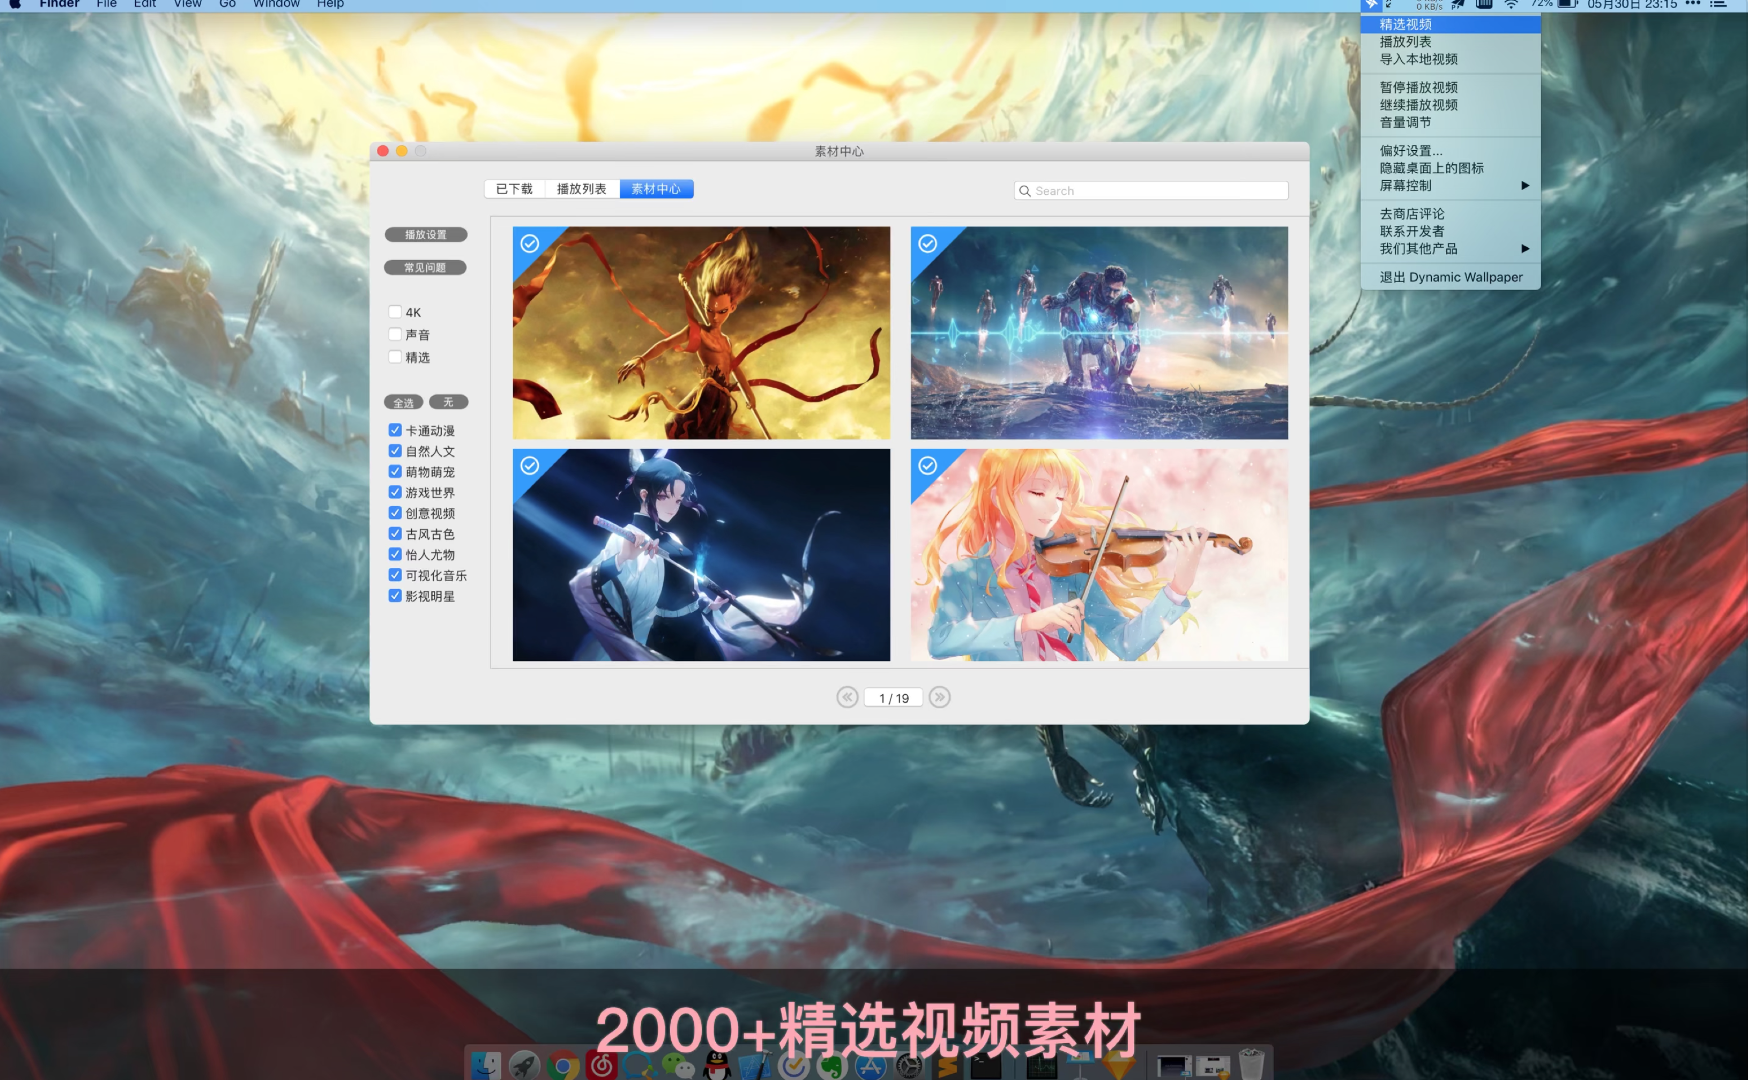 Dynamic Wallpaper for Mac 中文正版 4K动态壁纸 苹果电脑